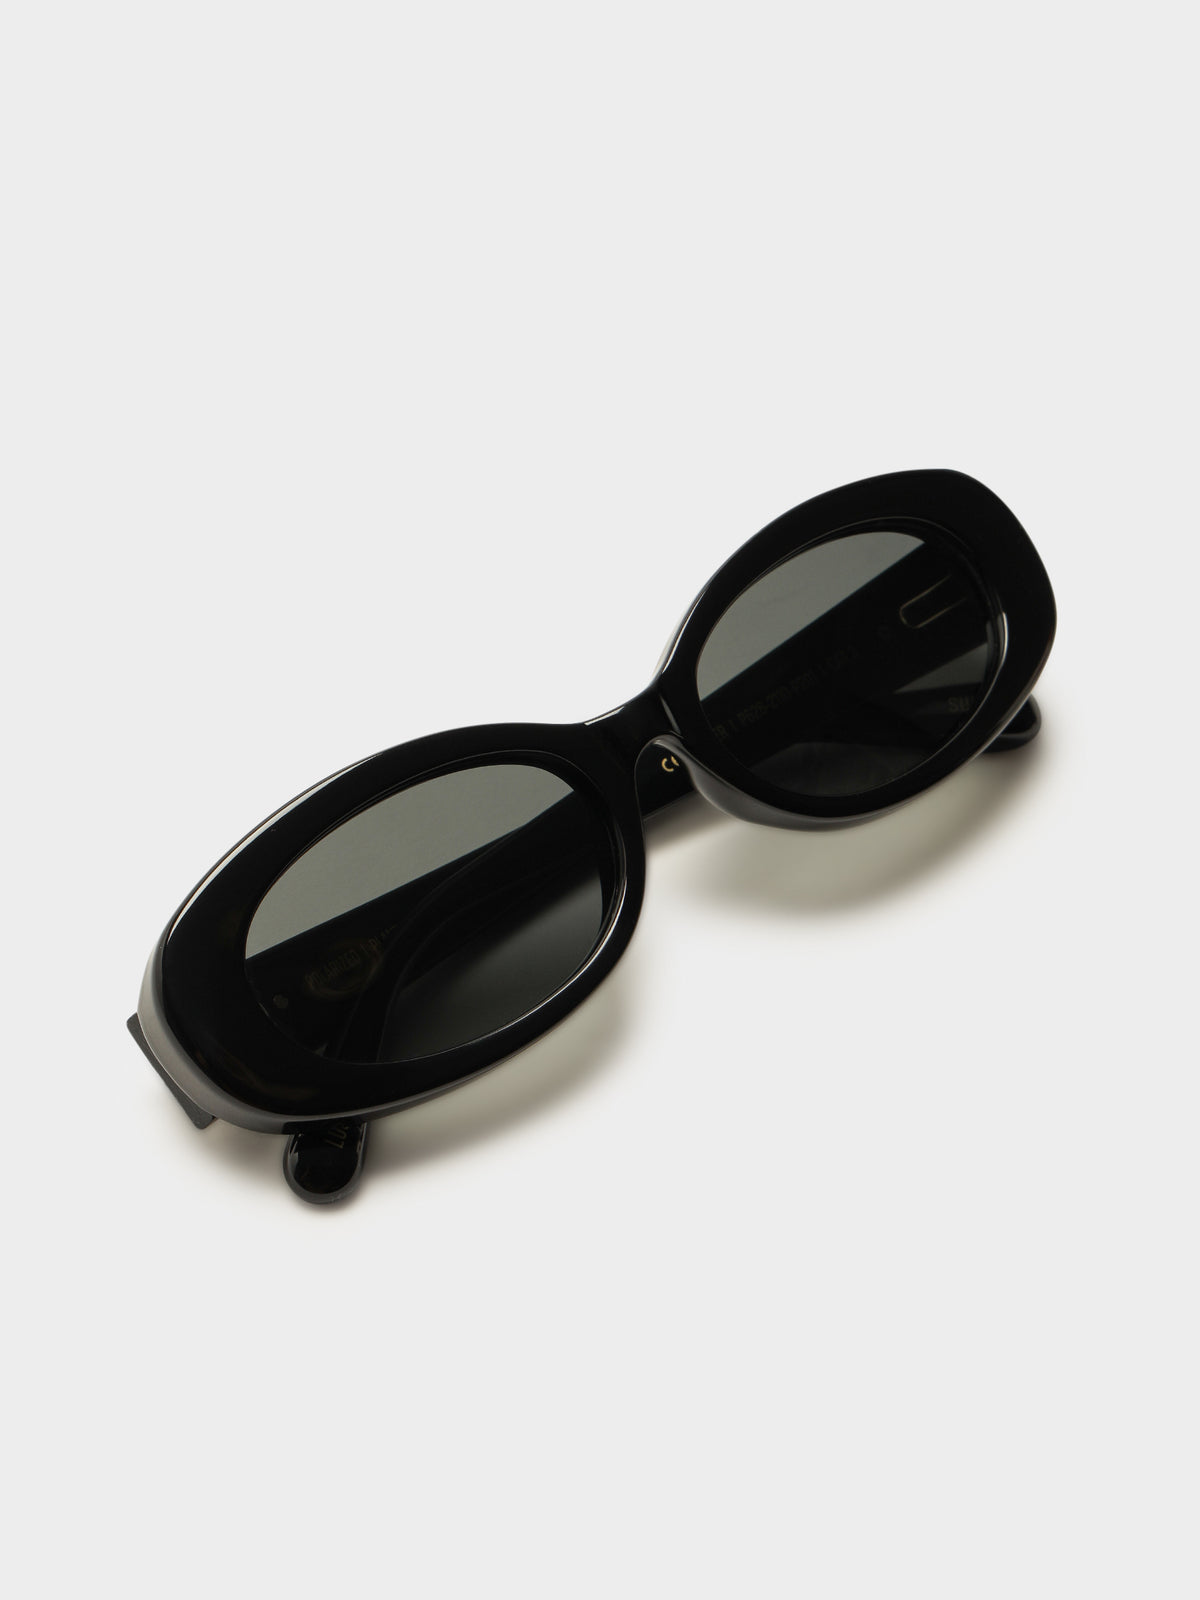 Berkley Sunglasses in Black